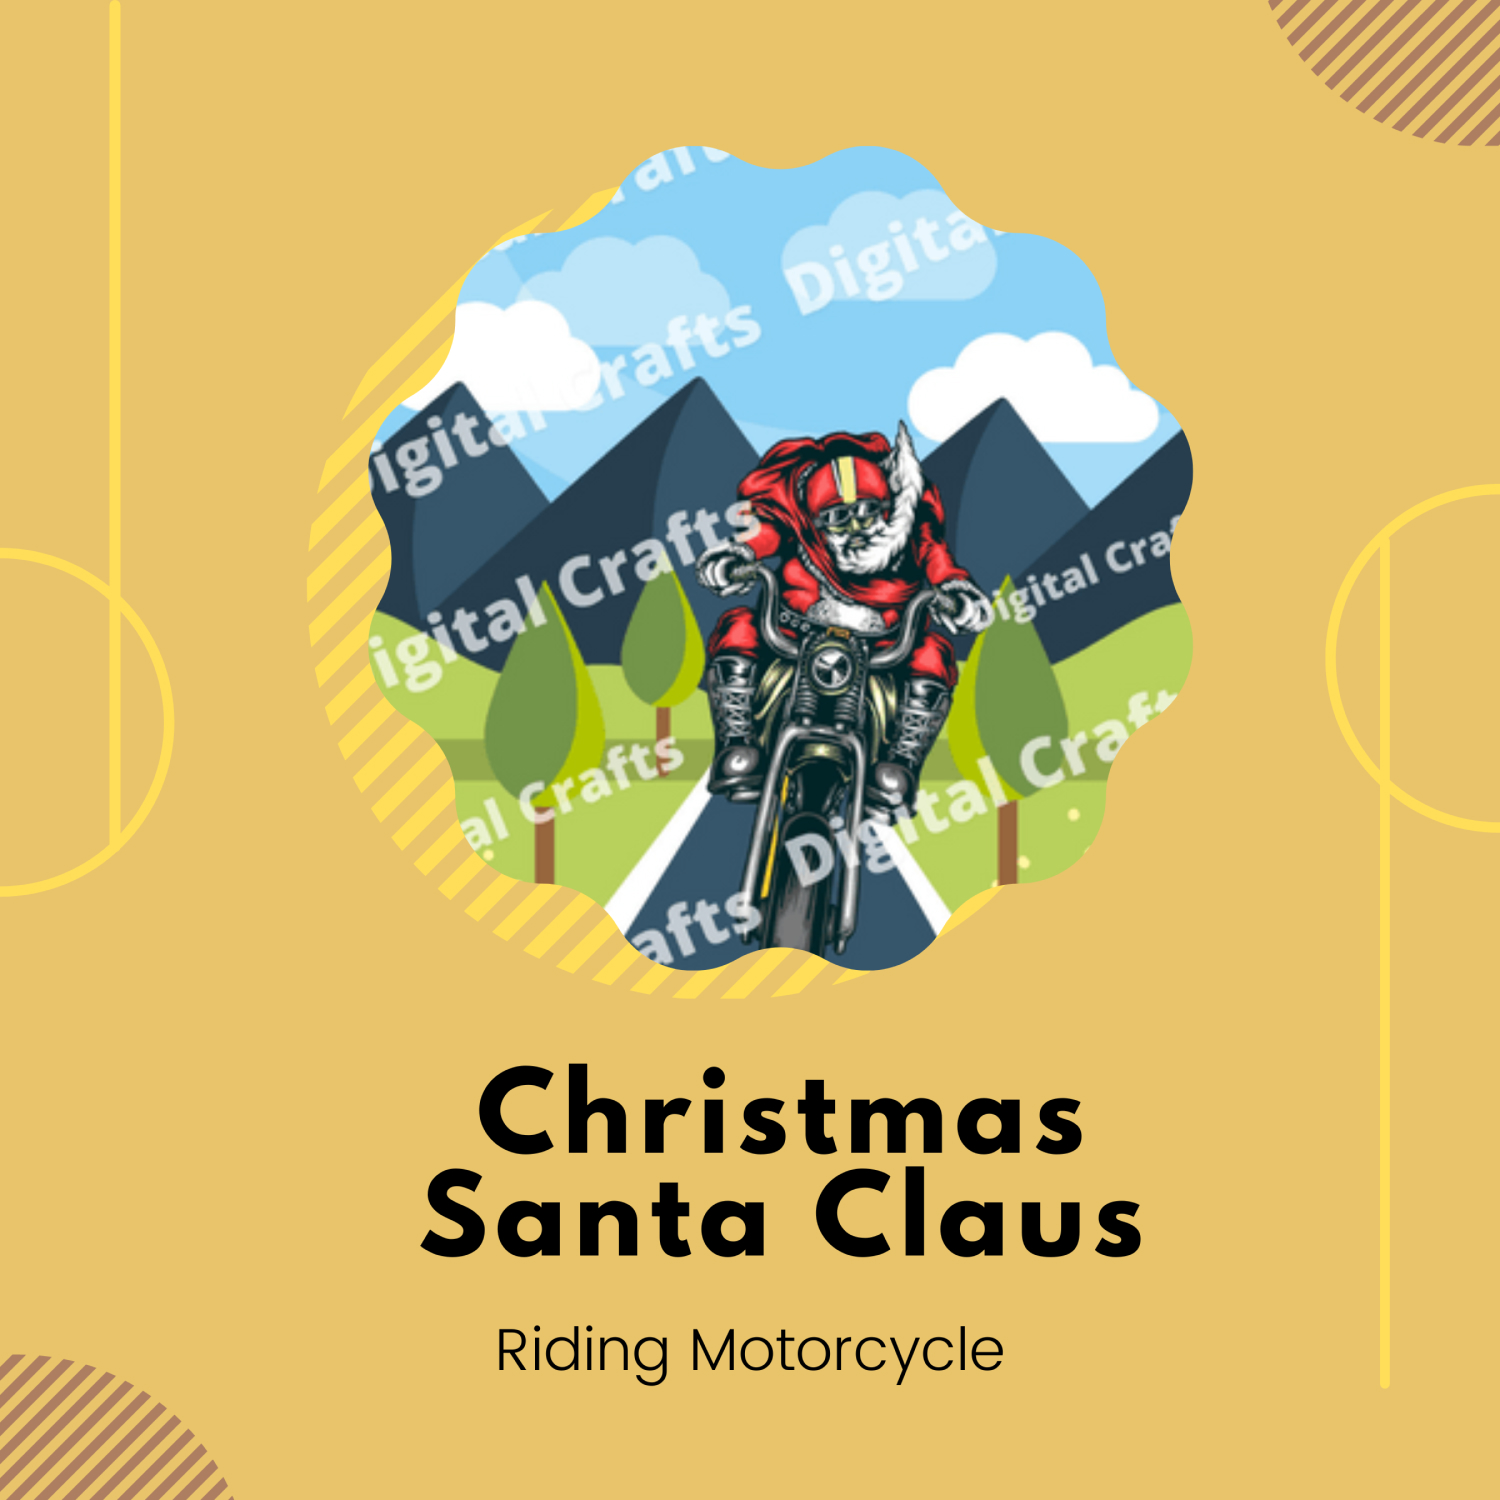 Christmas Santa Claus Riding Motorcycle.